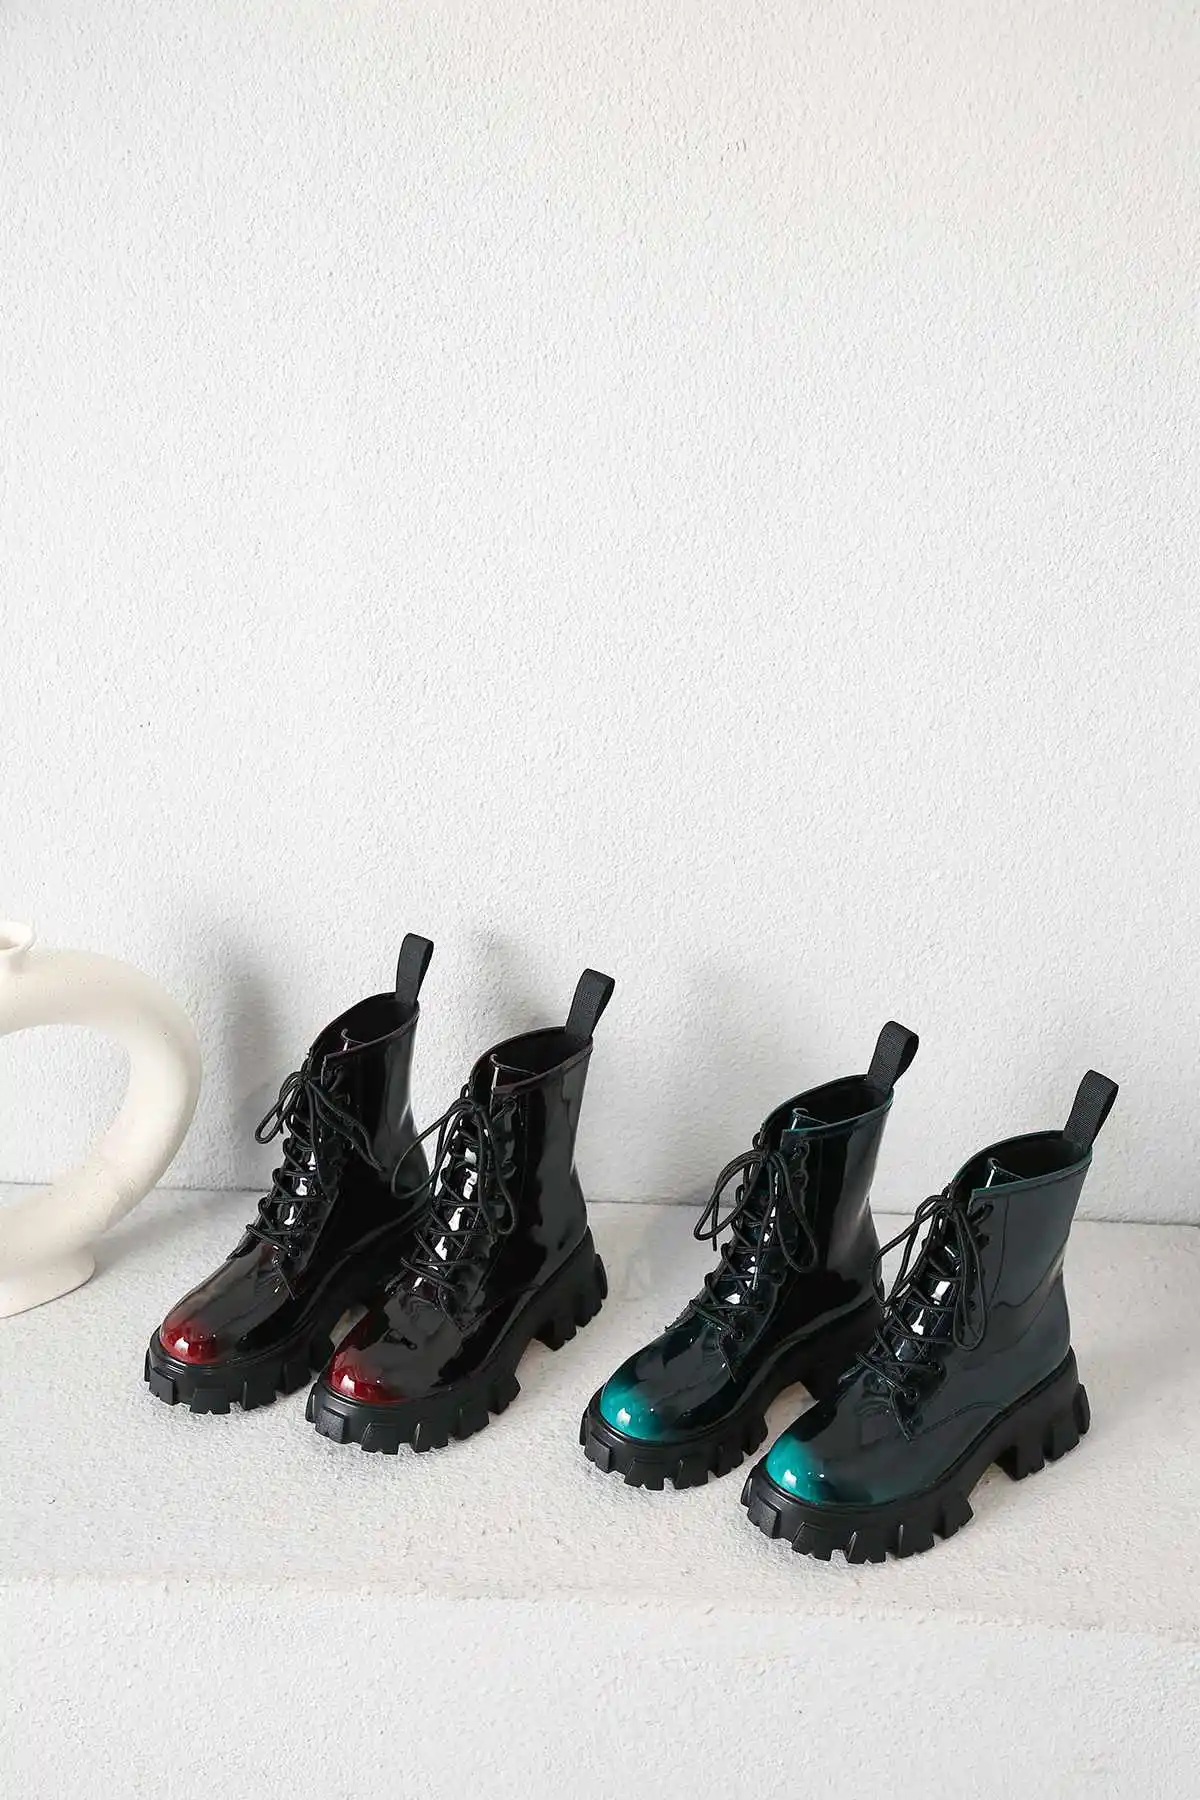 Krazing pot/Популярные разноцветные ботинки из коровьей кожи на толстой подошве; Зимние Теплые ботильоны с круглым носком на высоком каблуке со шнуровкой в студенческом стиле; L32